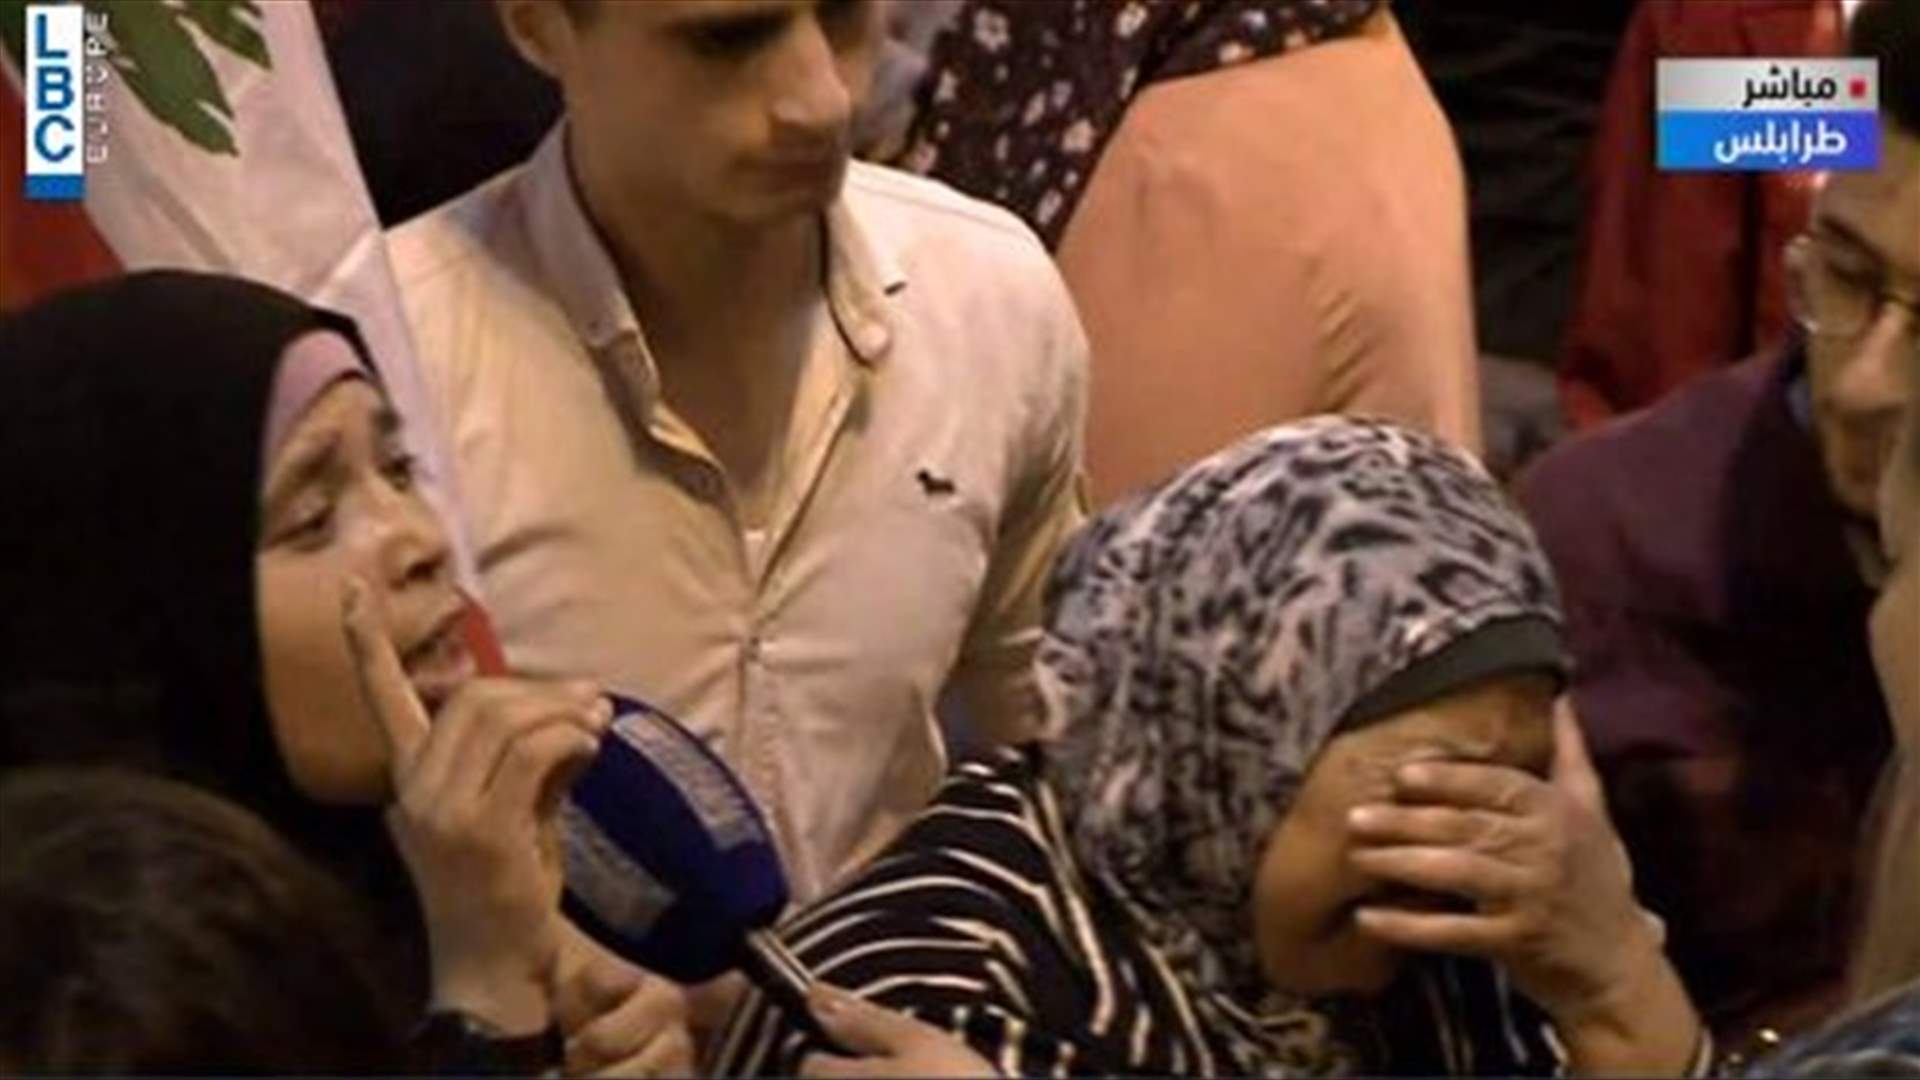 صرخة ودمعة لامرأة مسنة في طرابلس: ابني لاجئ في الخارج بينما الغريب يعيش في وطني (فيديو)